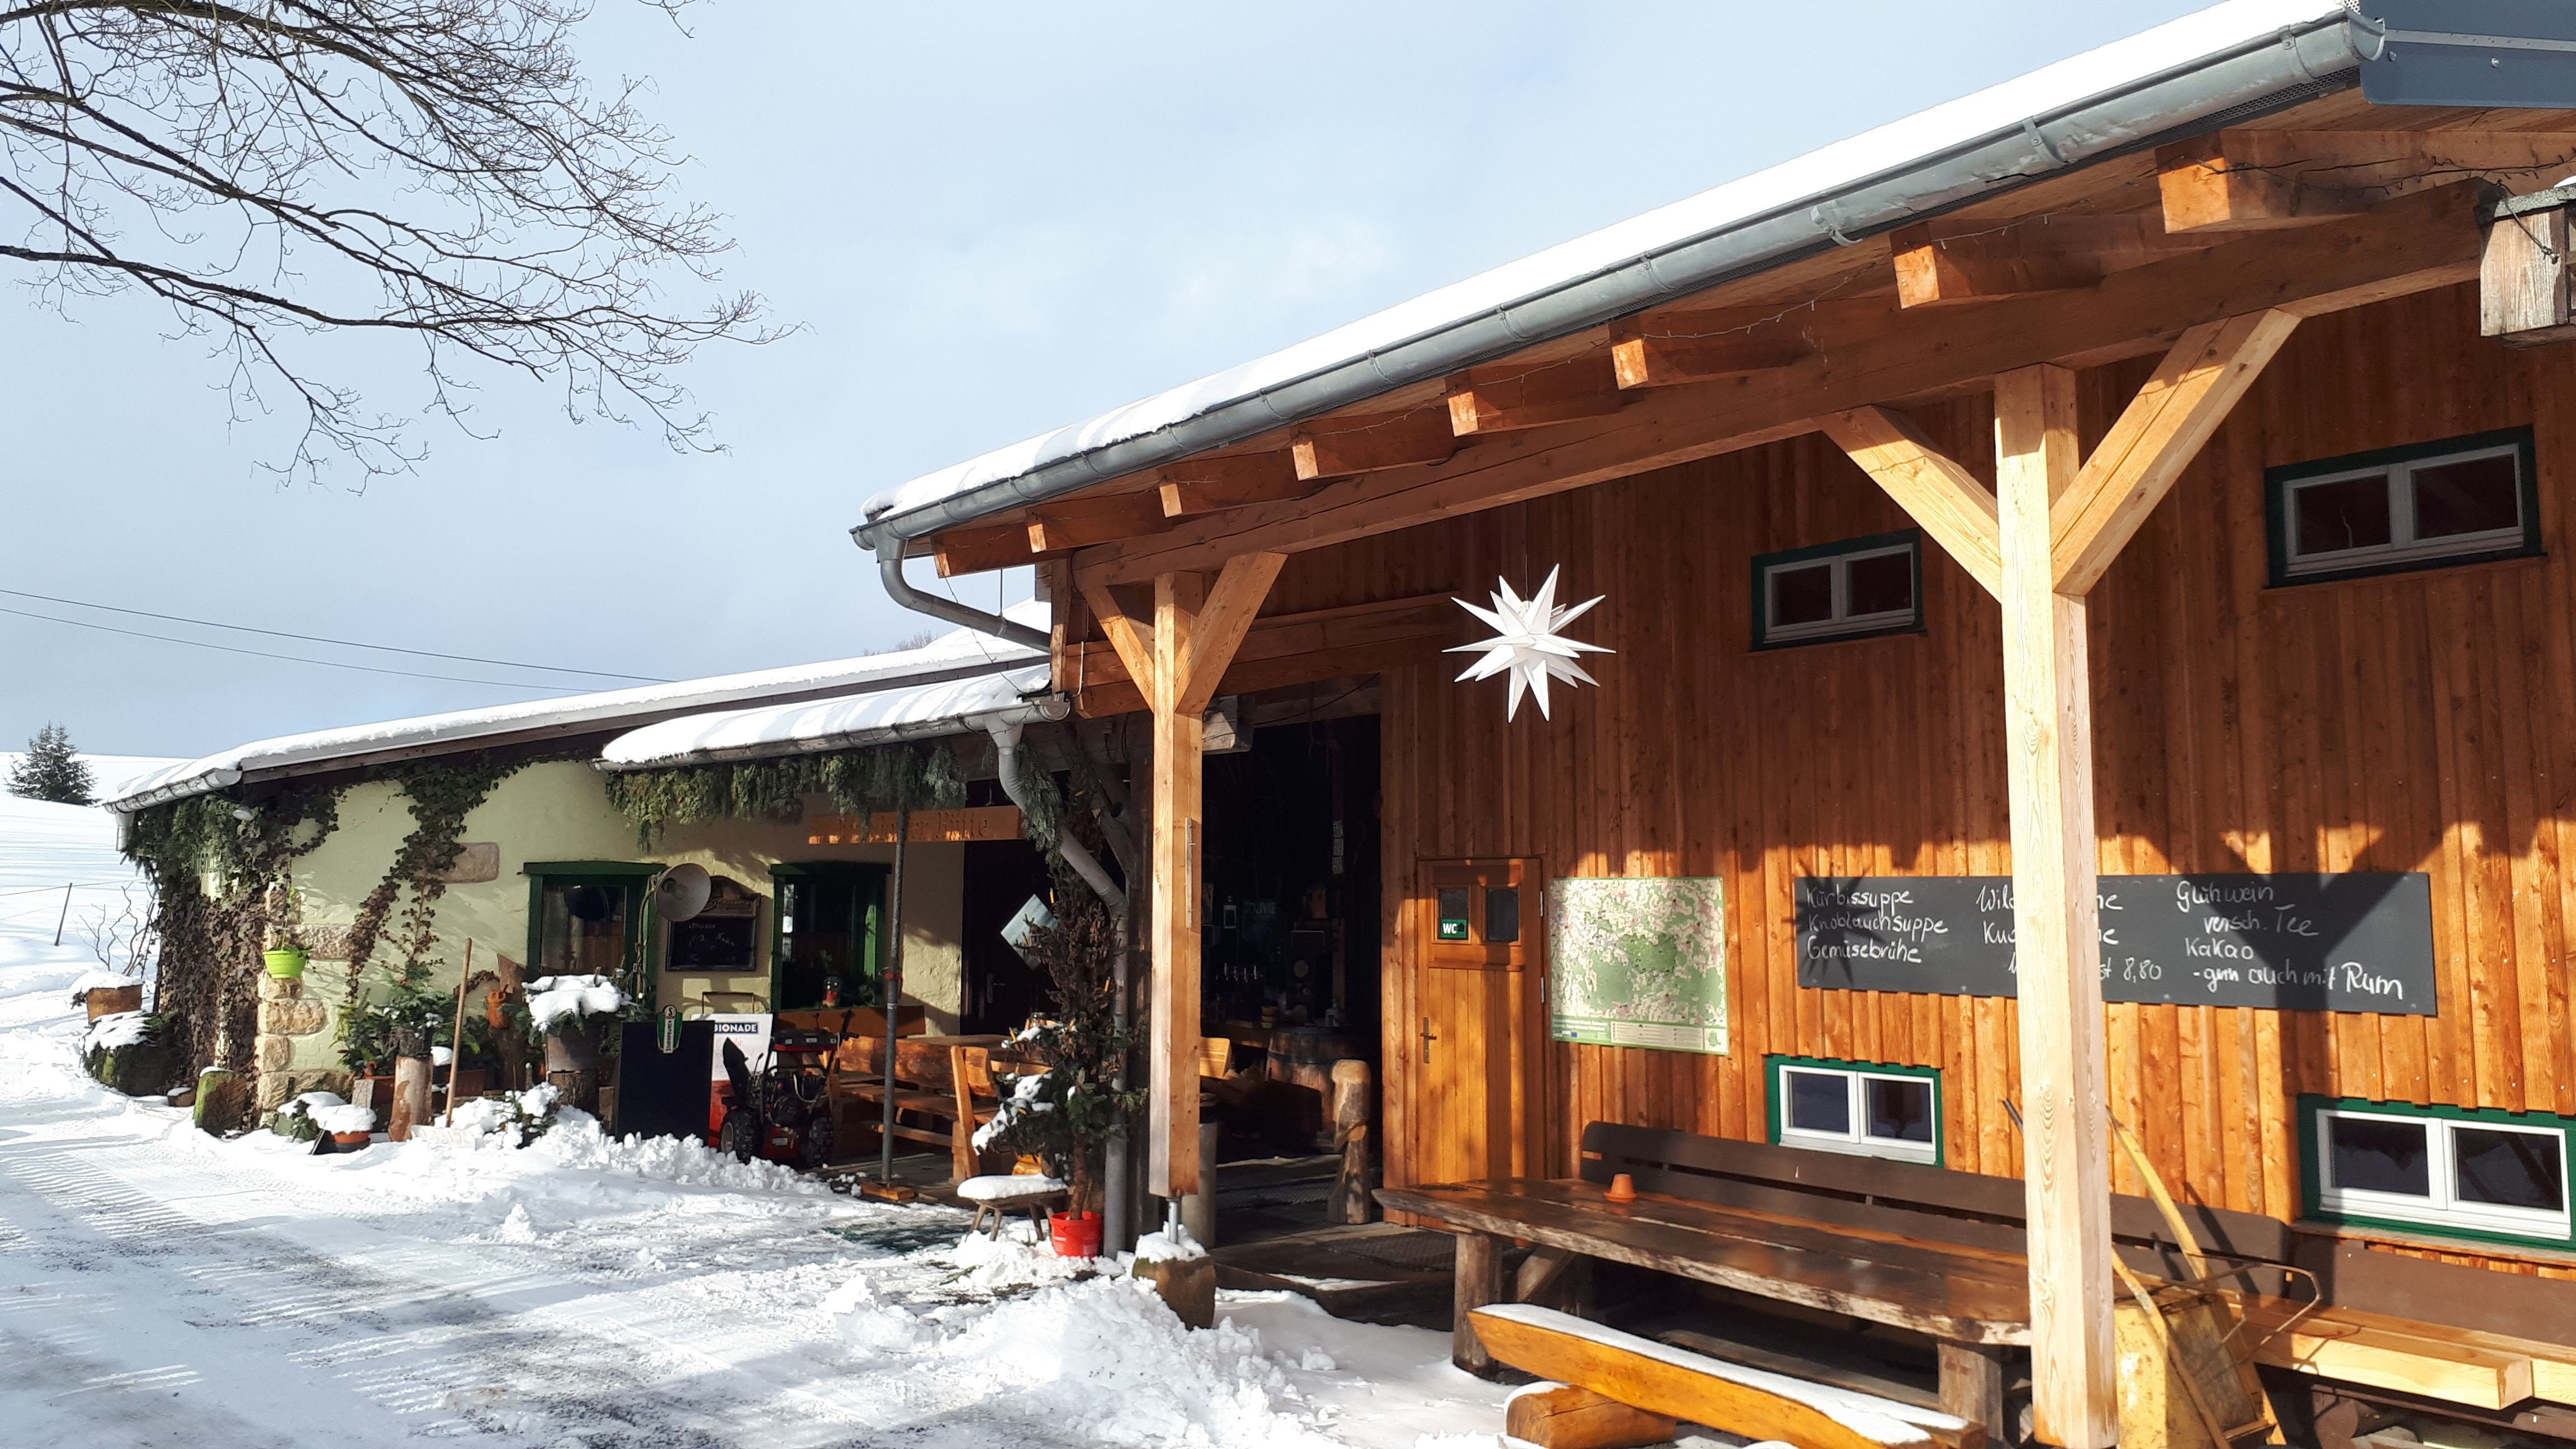 Die Wintersaison in der Sächsischen Schweiz steht vor der Tür. Die Ottendorfer Hütte war besser als je zuvor gebucht. Nun hofft man, dass die coronabedingte Schließung nicht zu lange dauert.